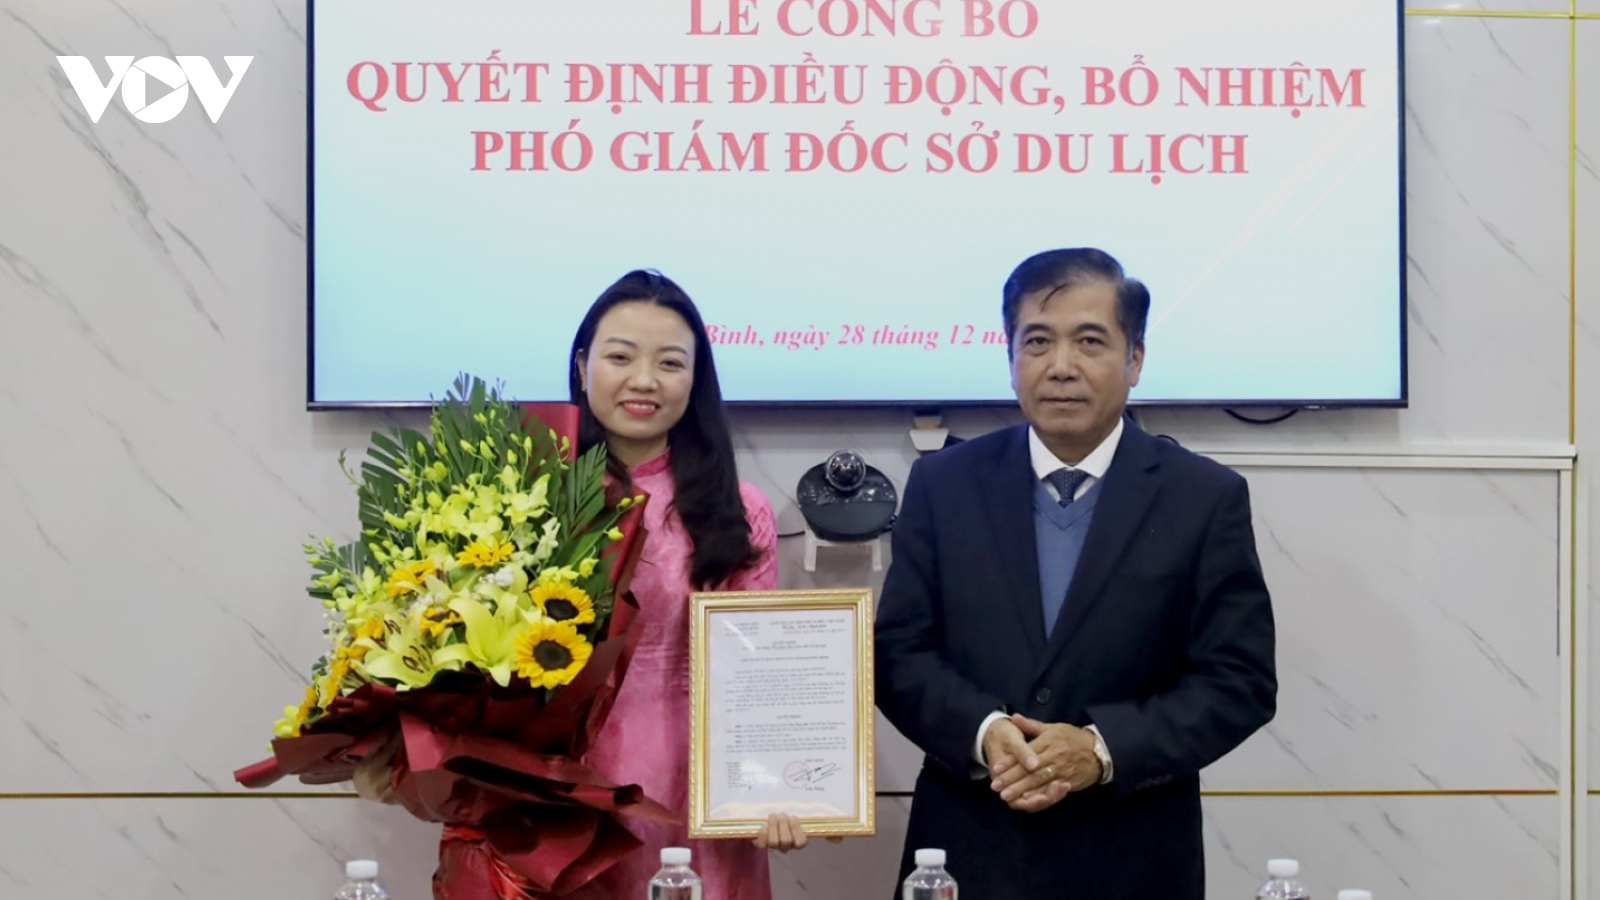 Phó Bí thư Tỉnh đoàn giữ chức Phó Giám đốc Sở Du lịch tỉnh Quảng Bình